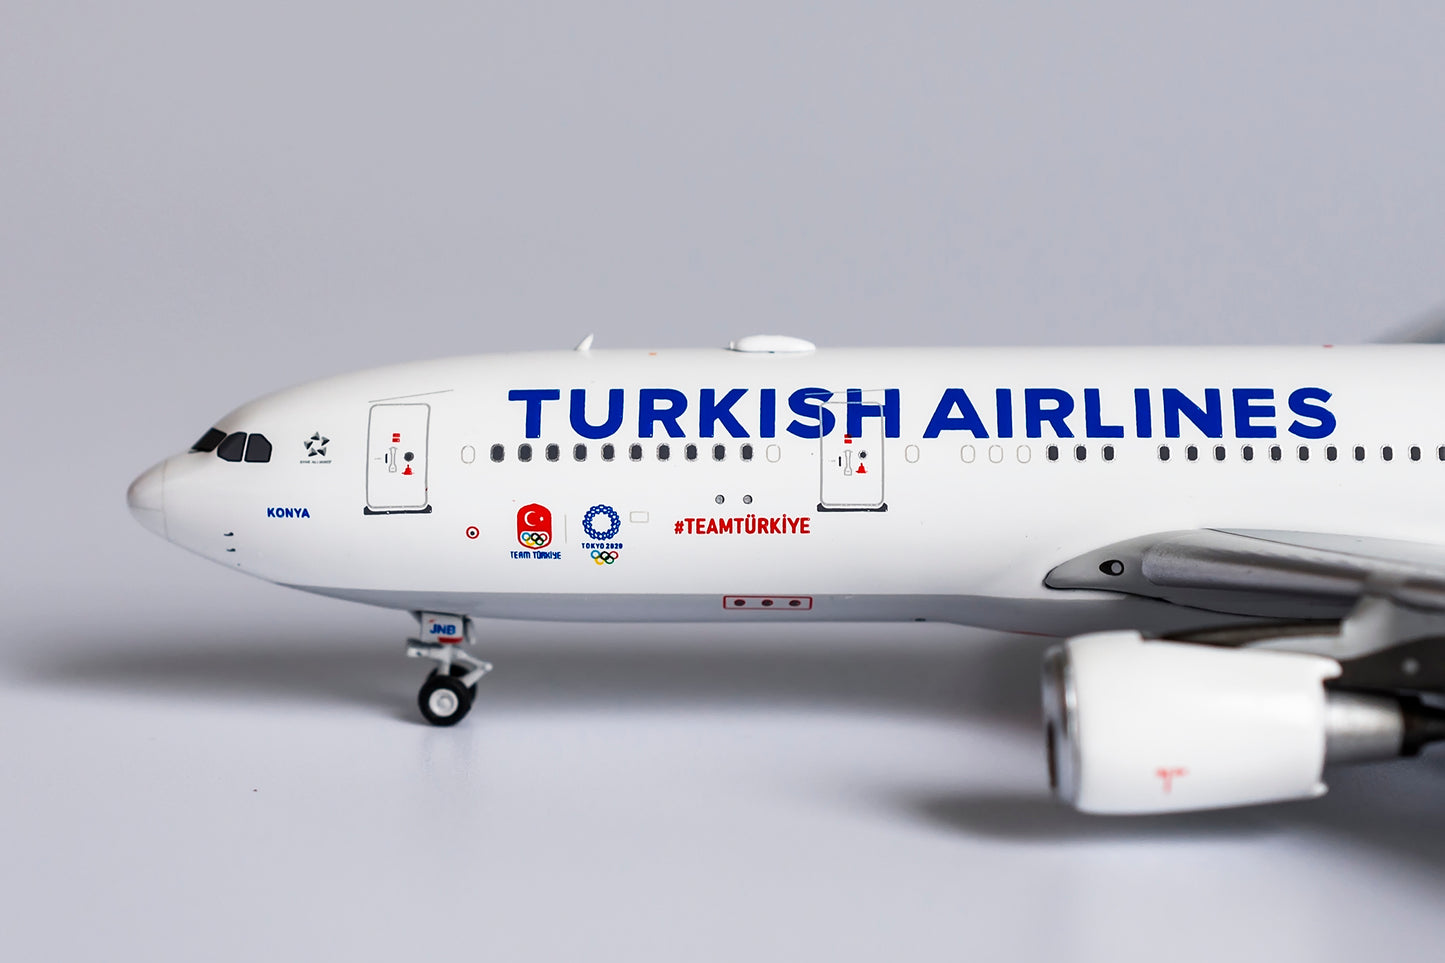 1:400 NG Models Turkish Airlines Airbus A330-200 "Tokyo 2020 Olympics TC-JNB NG61032